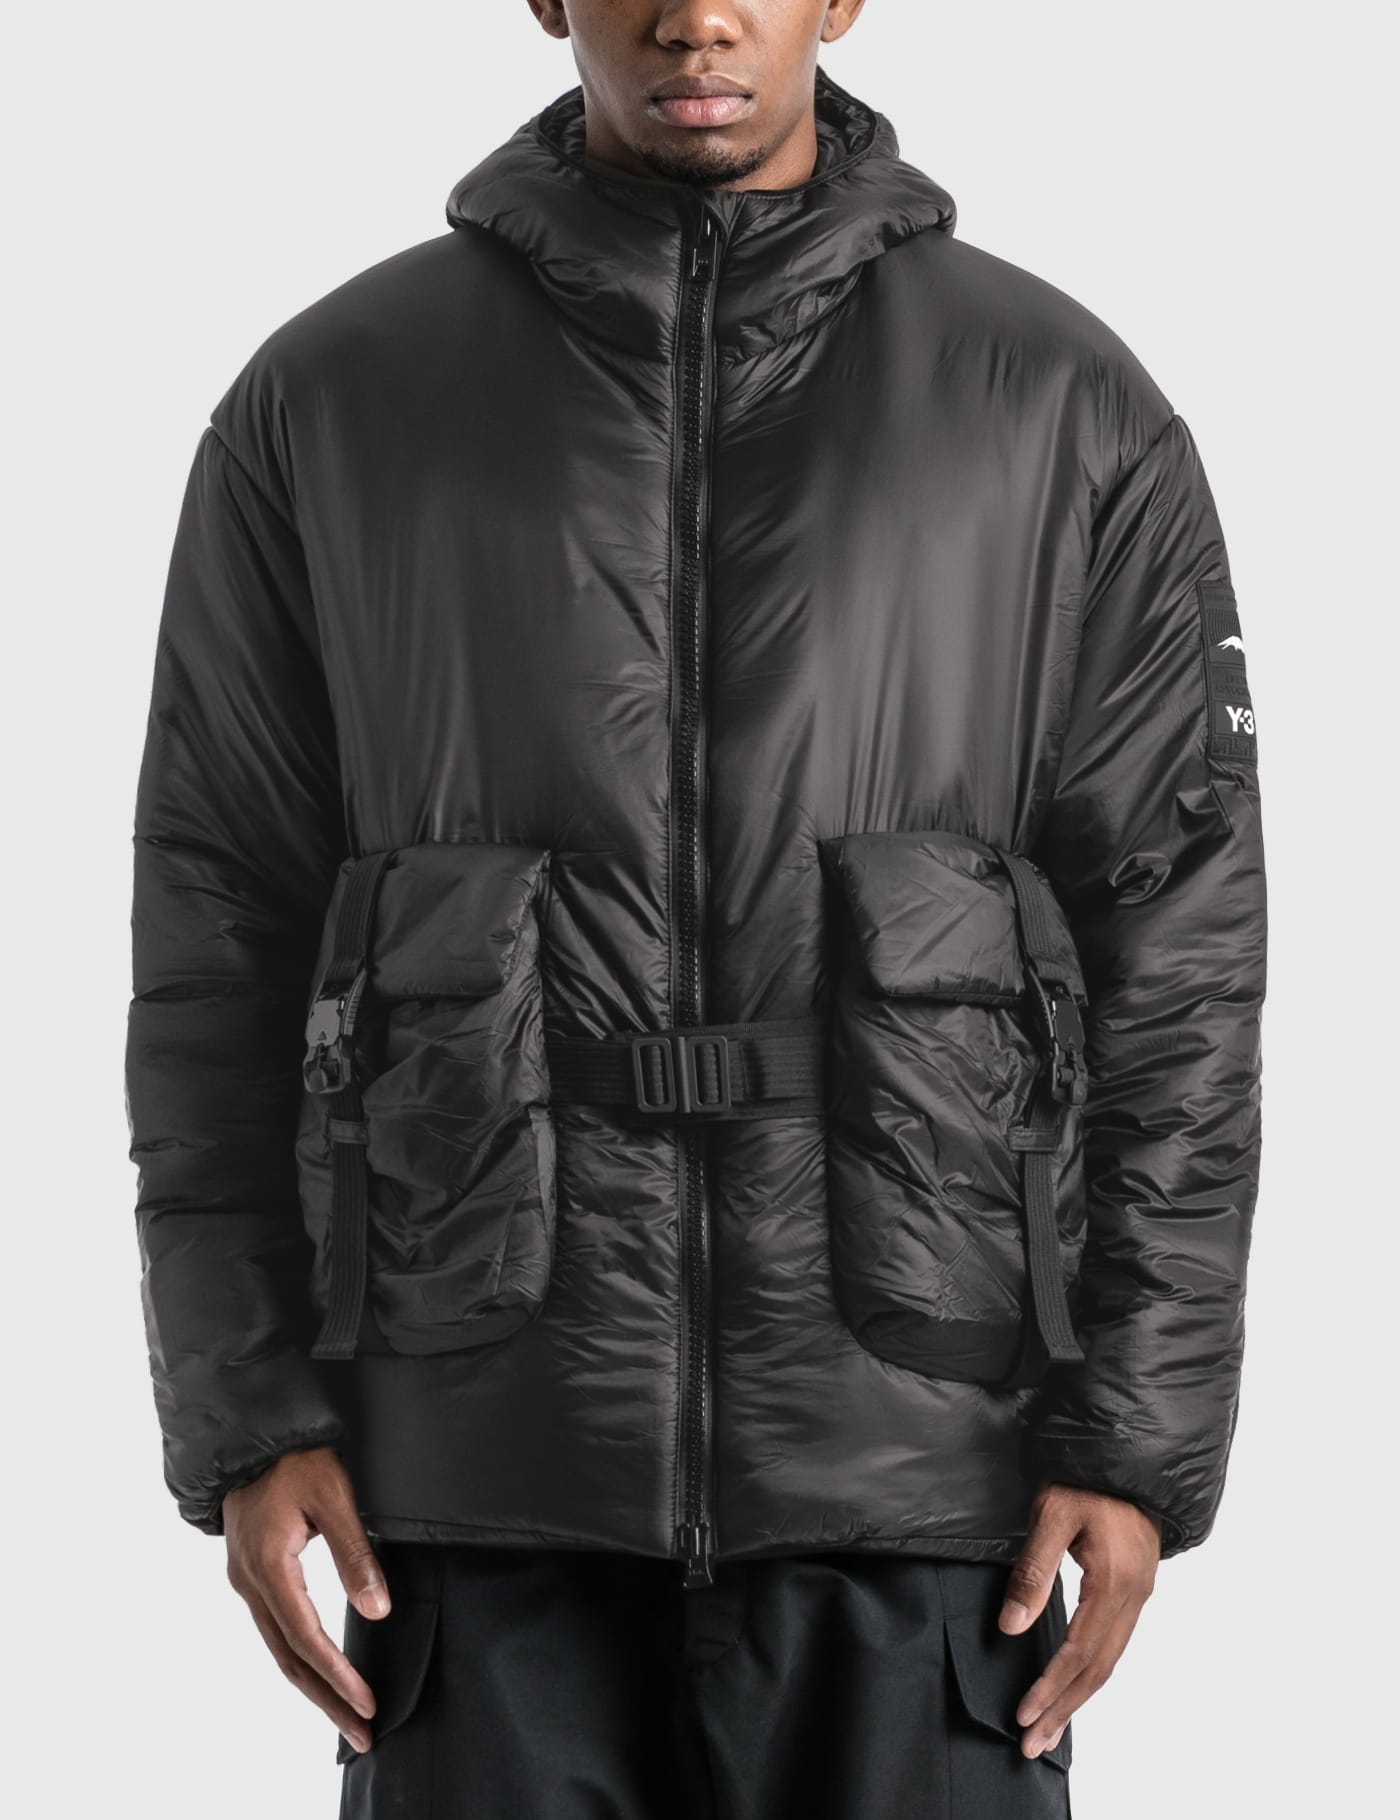 y3 jacket black